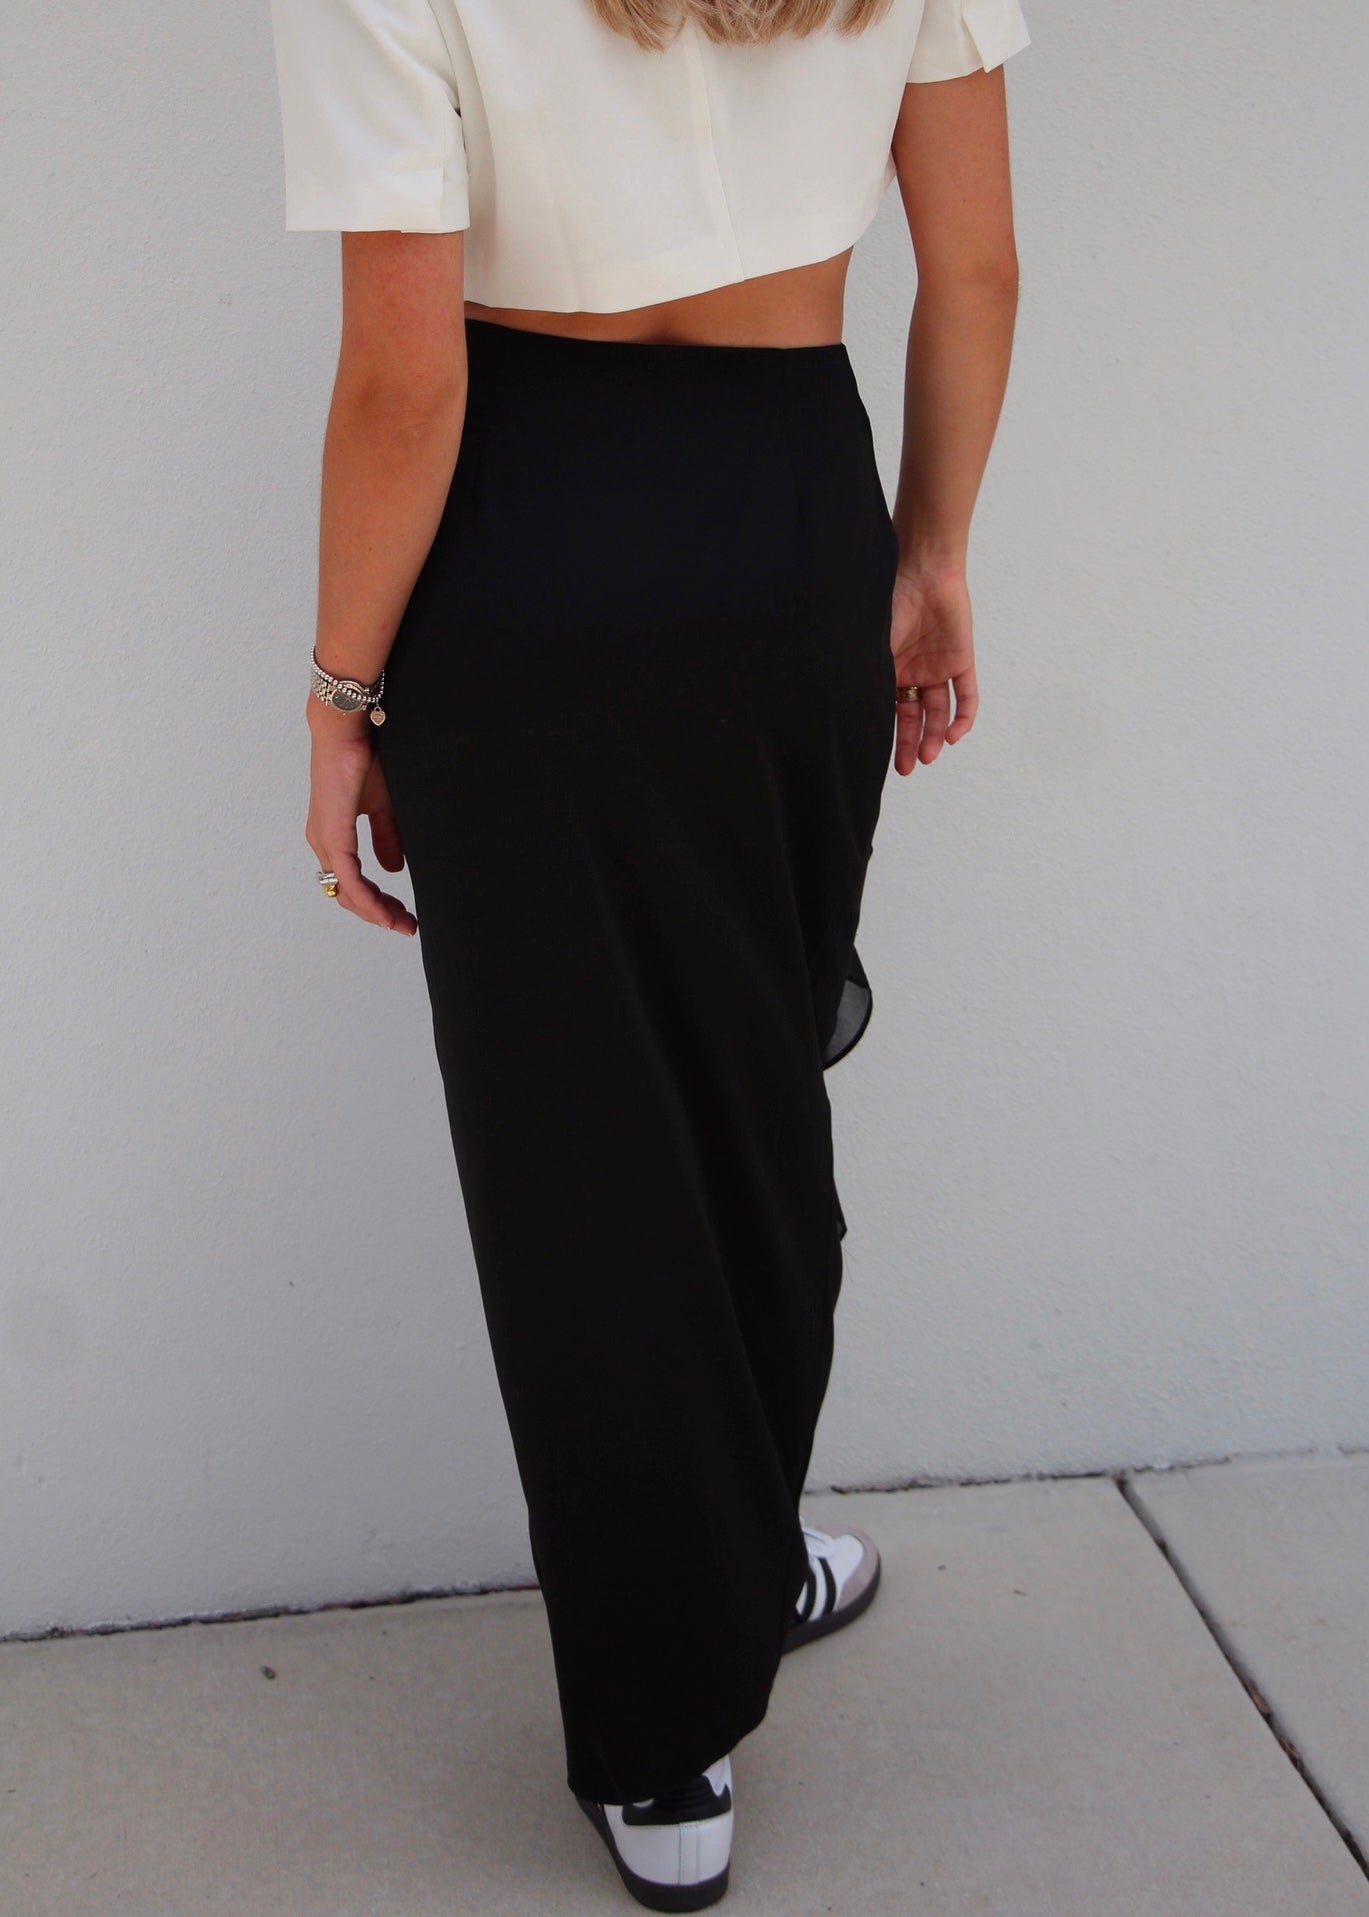 Strandvagen: Black Ruffle Midi Skirt